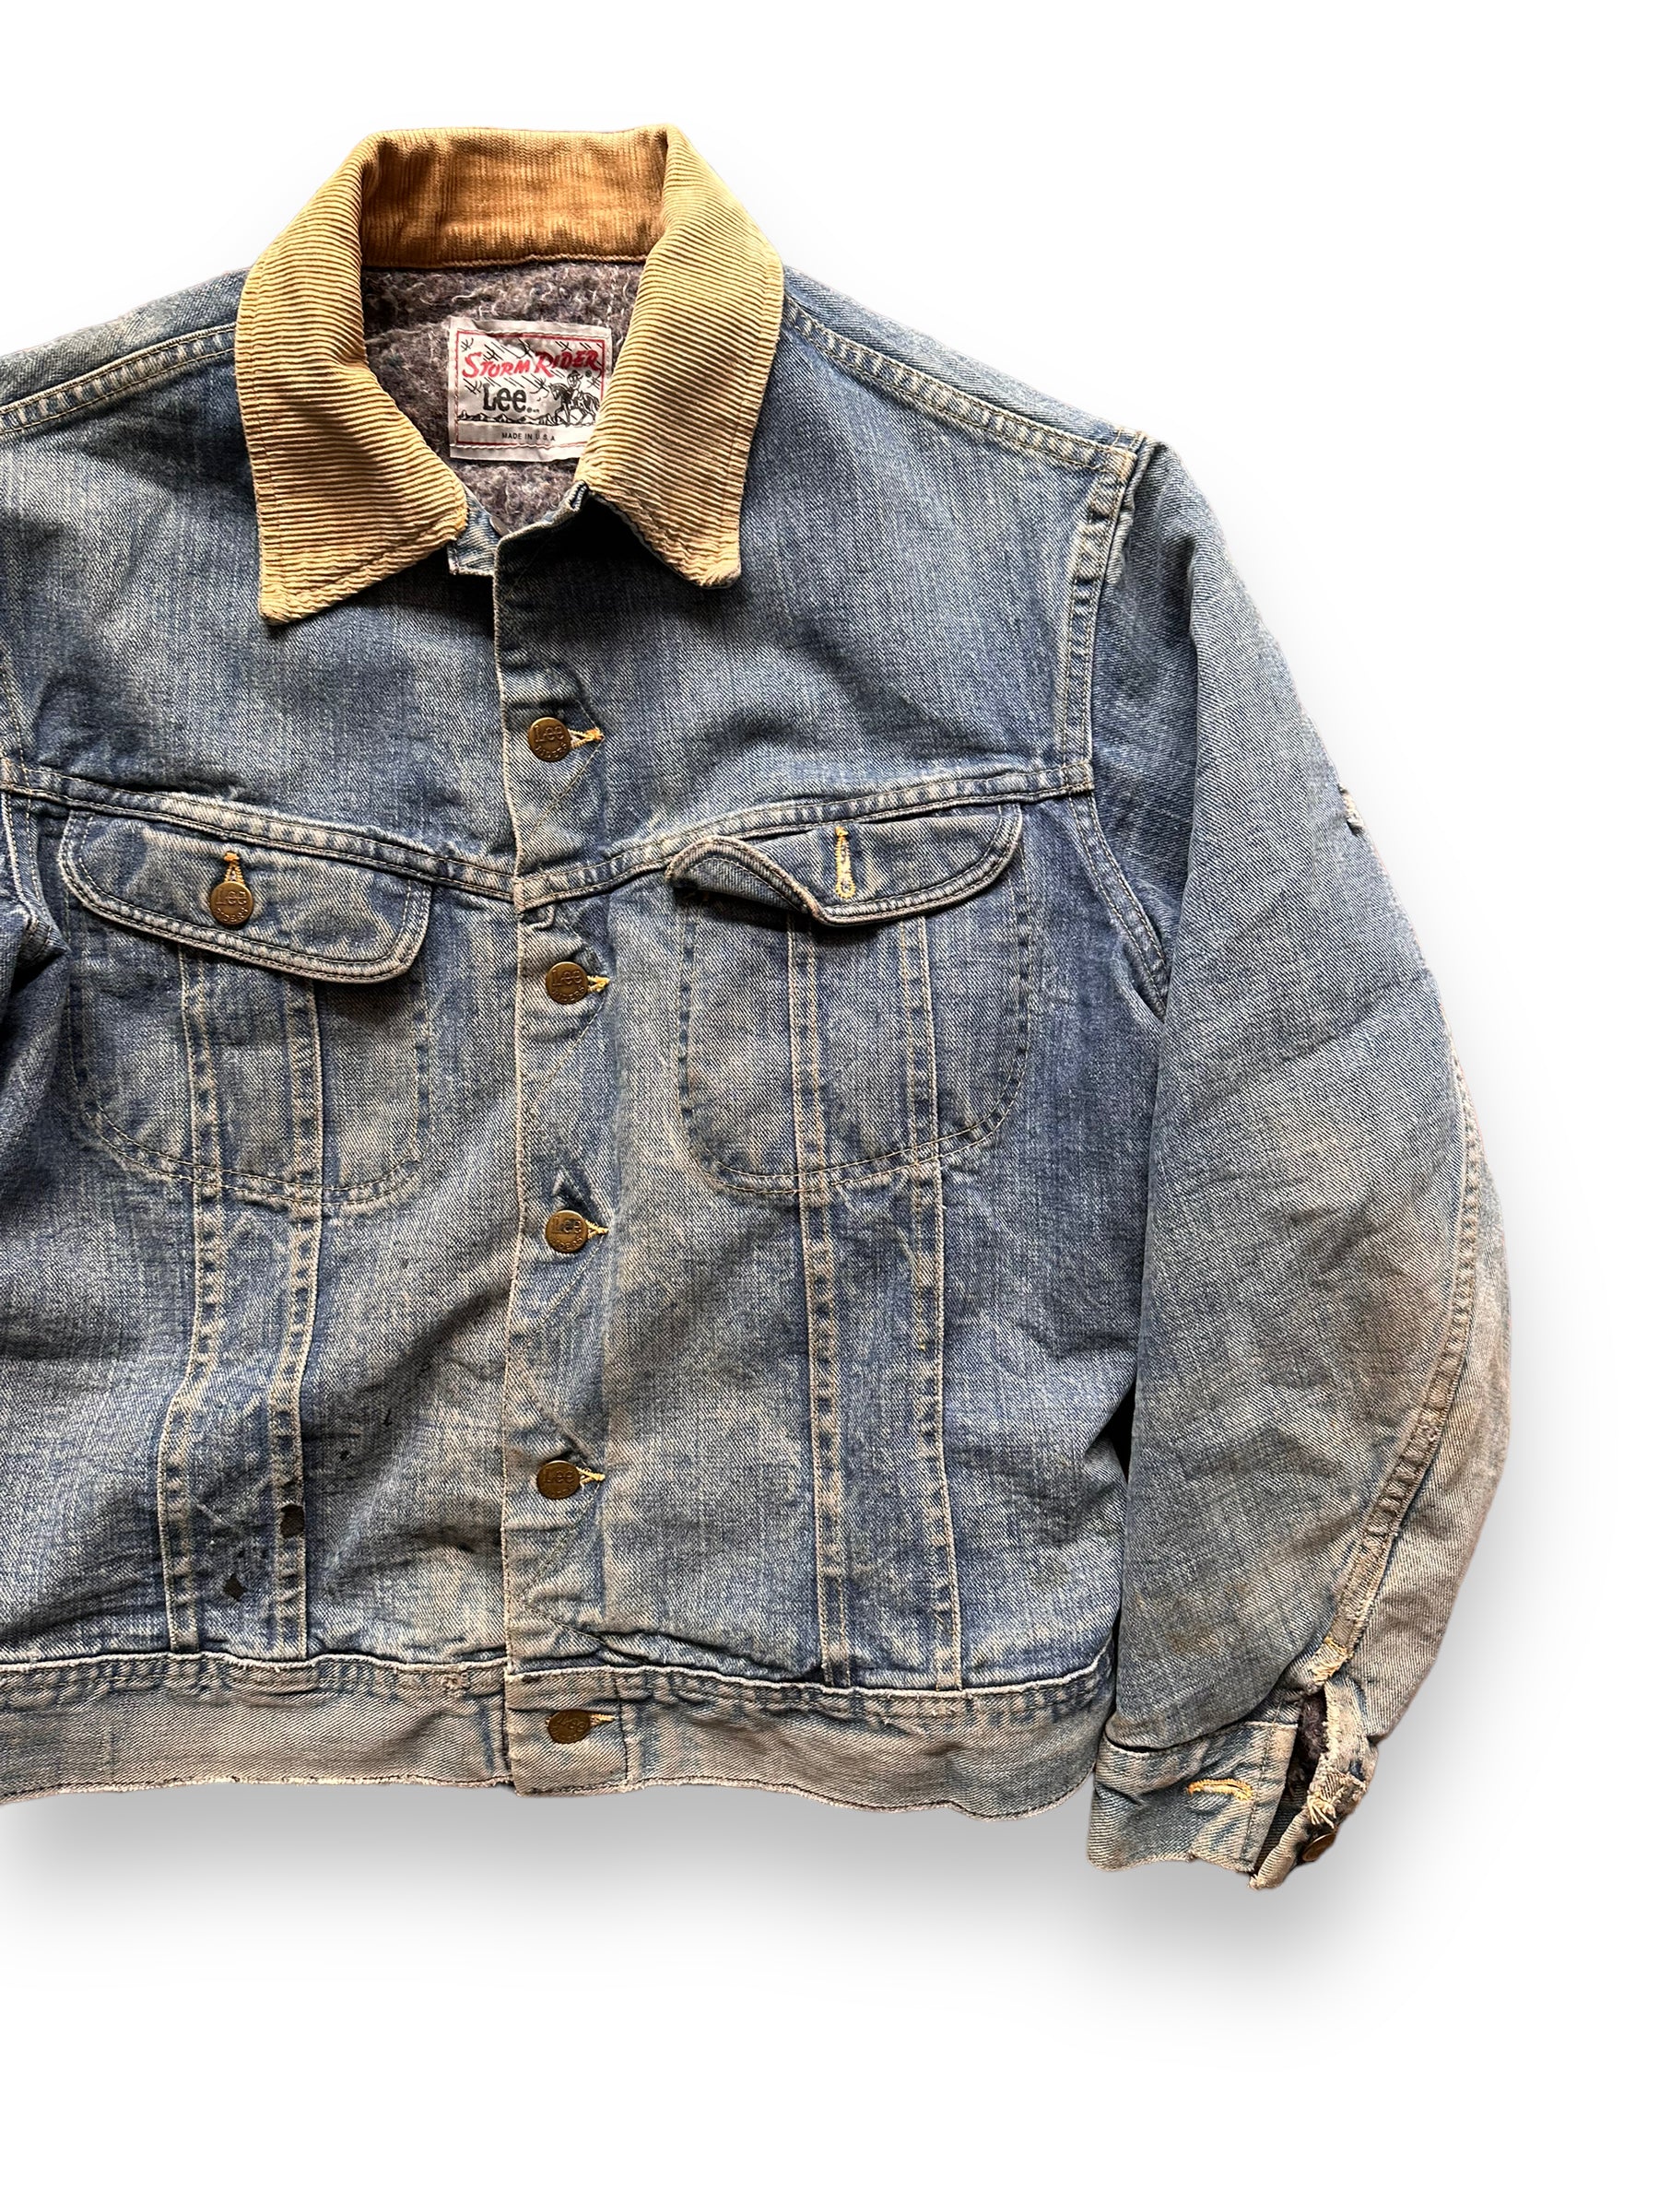 Front Left View of Vintage Blanket Lined Lee Storm Rider Denim Jacket SZ L| Barn Owl Vintage | Seattle True Vintage Workwear